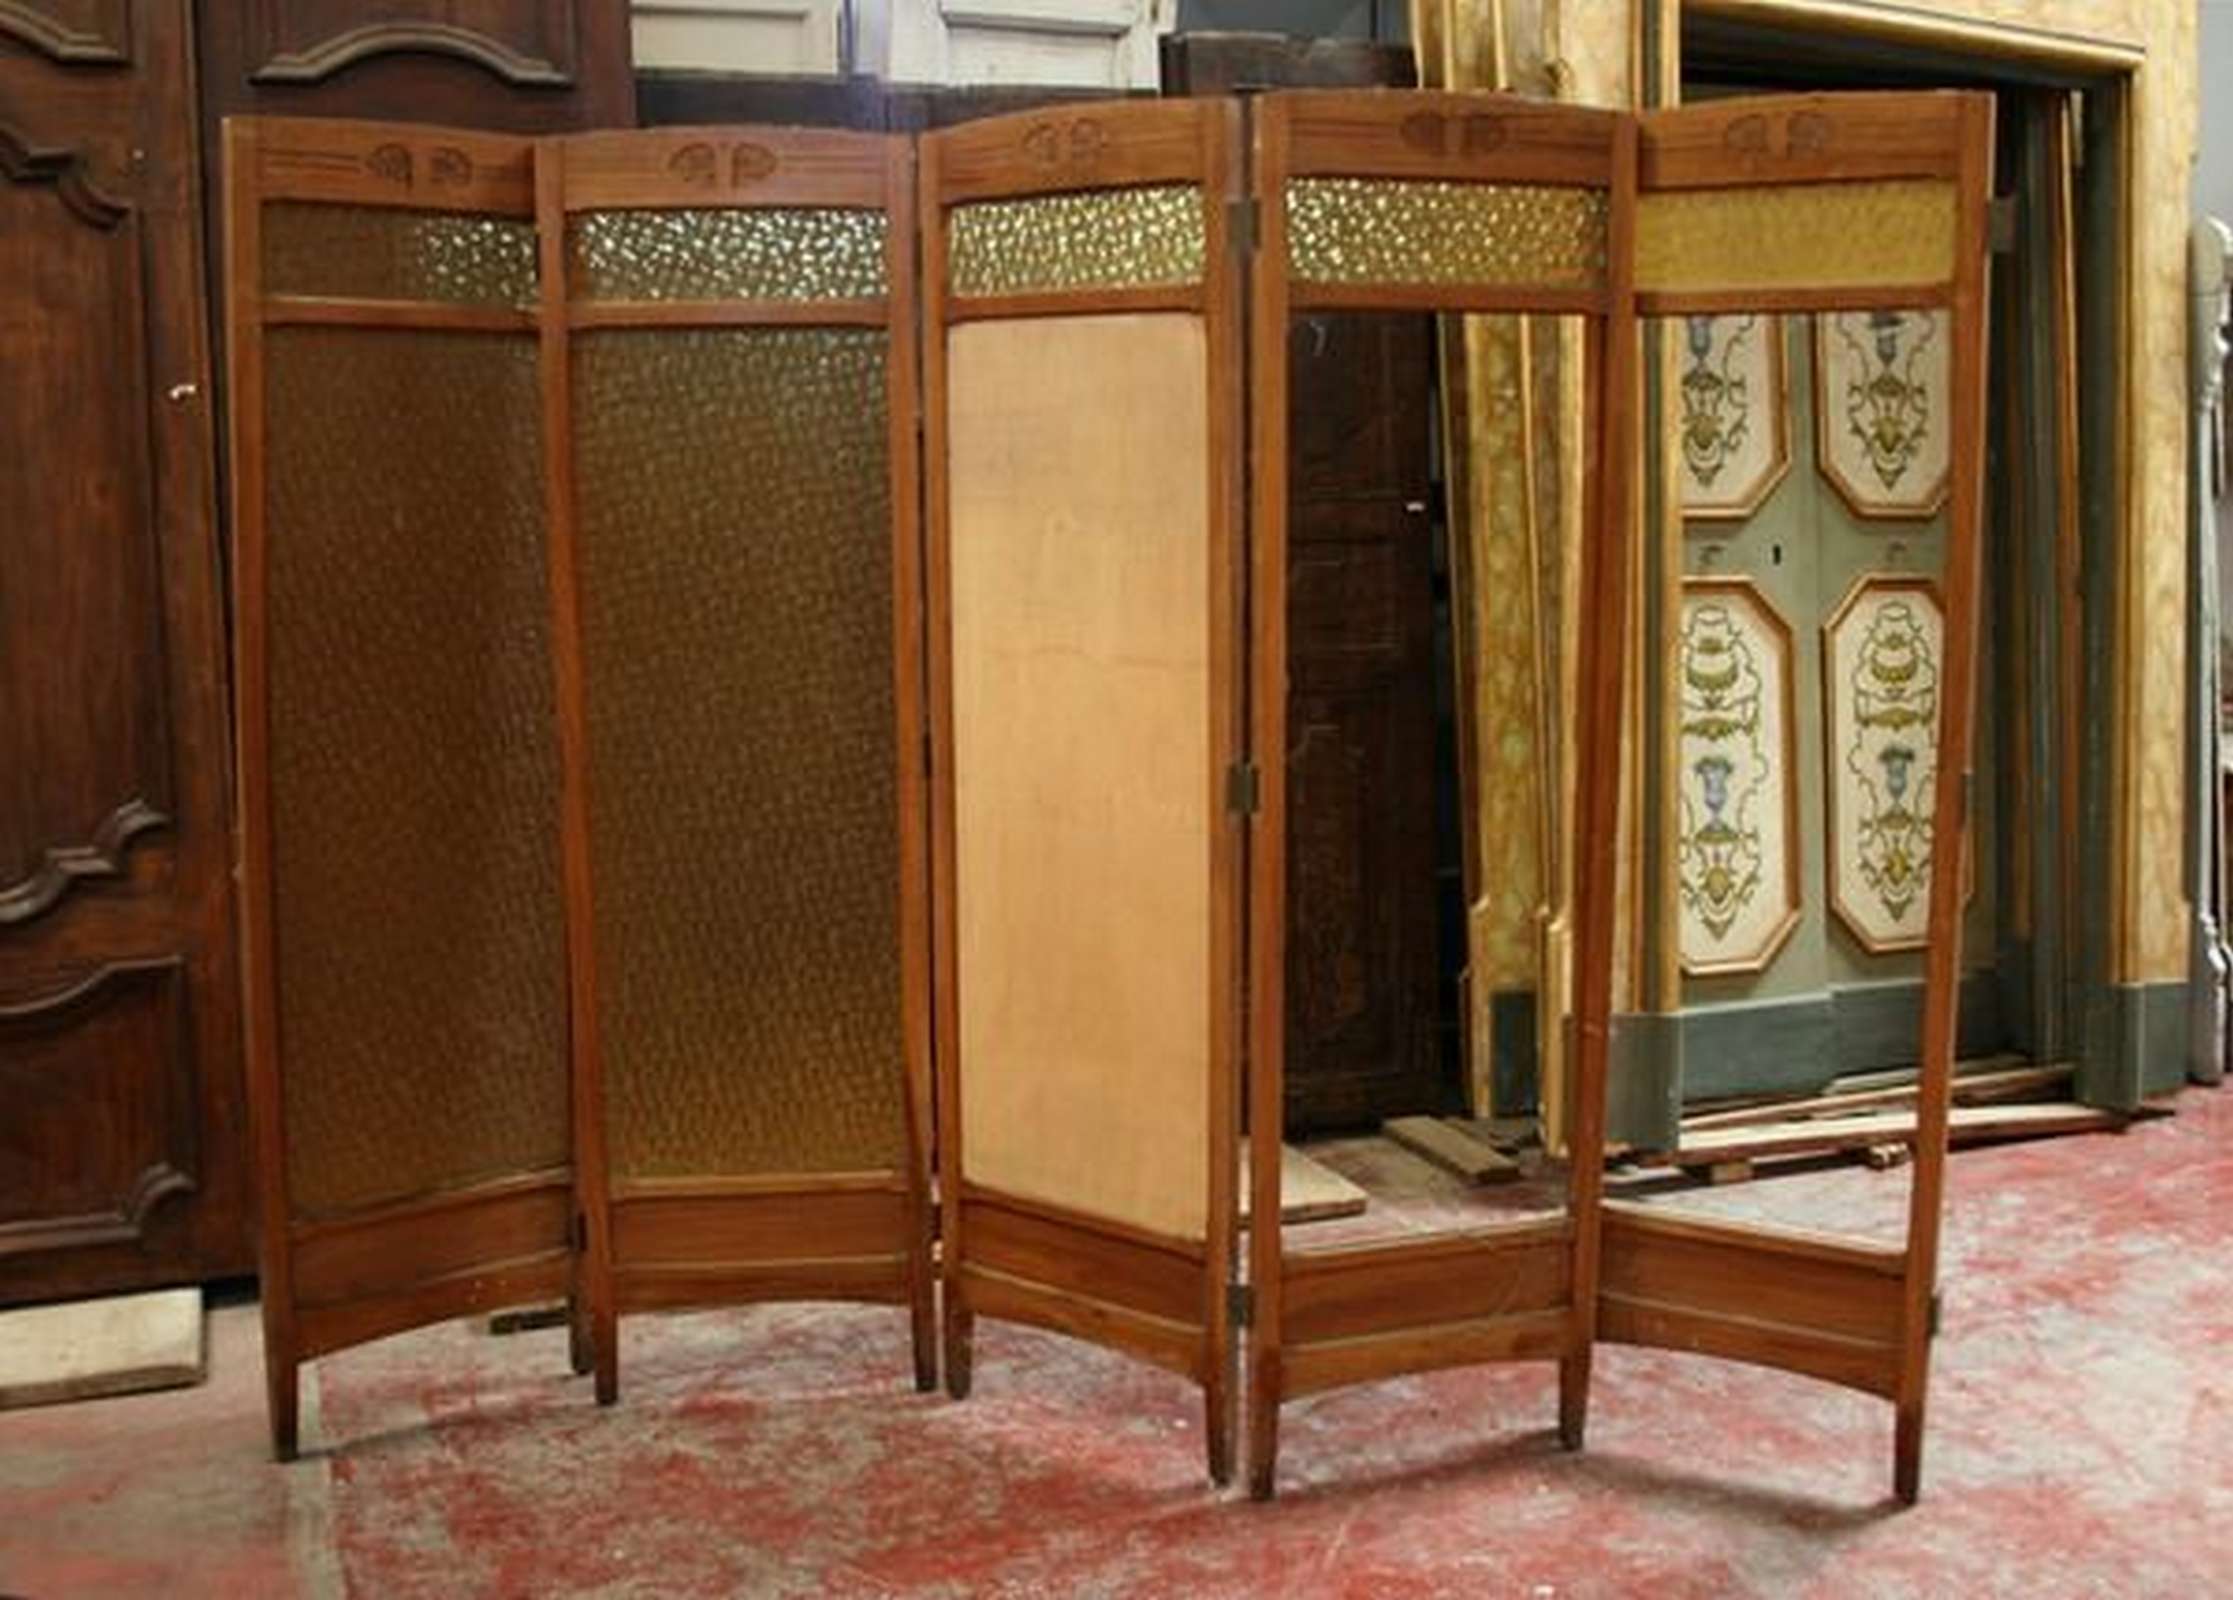 Paravento in legno e vetro - Others - Furniture - Products - Antichità  Fiorillo